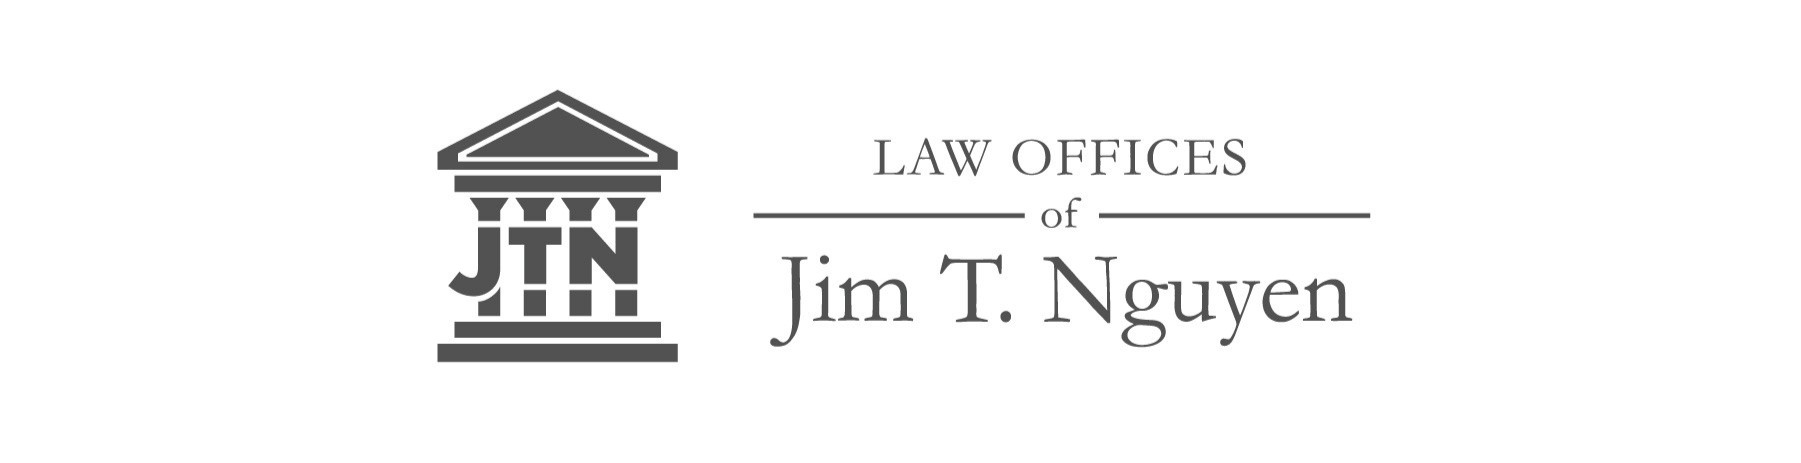 JTN Law logo header